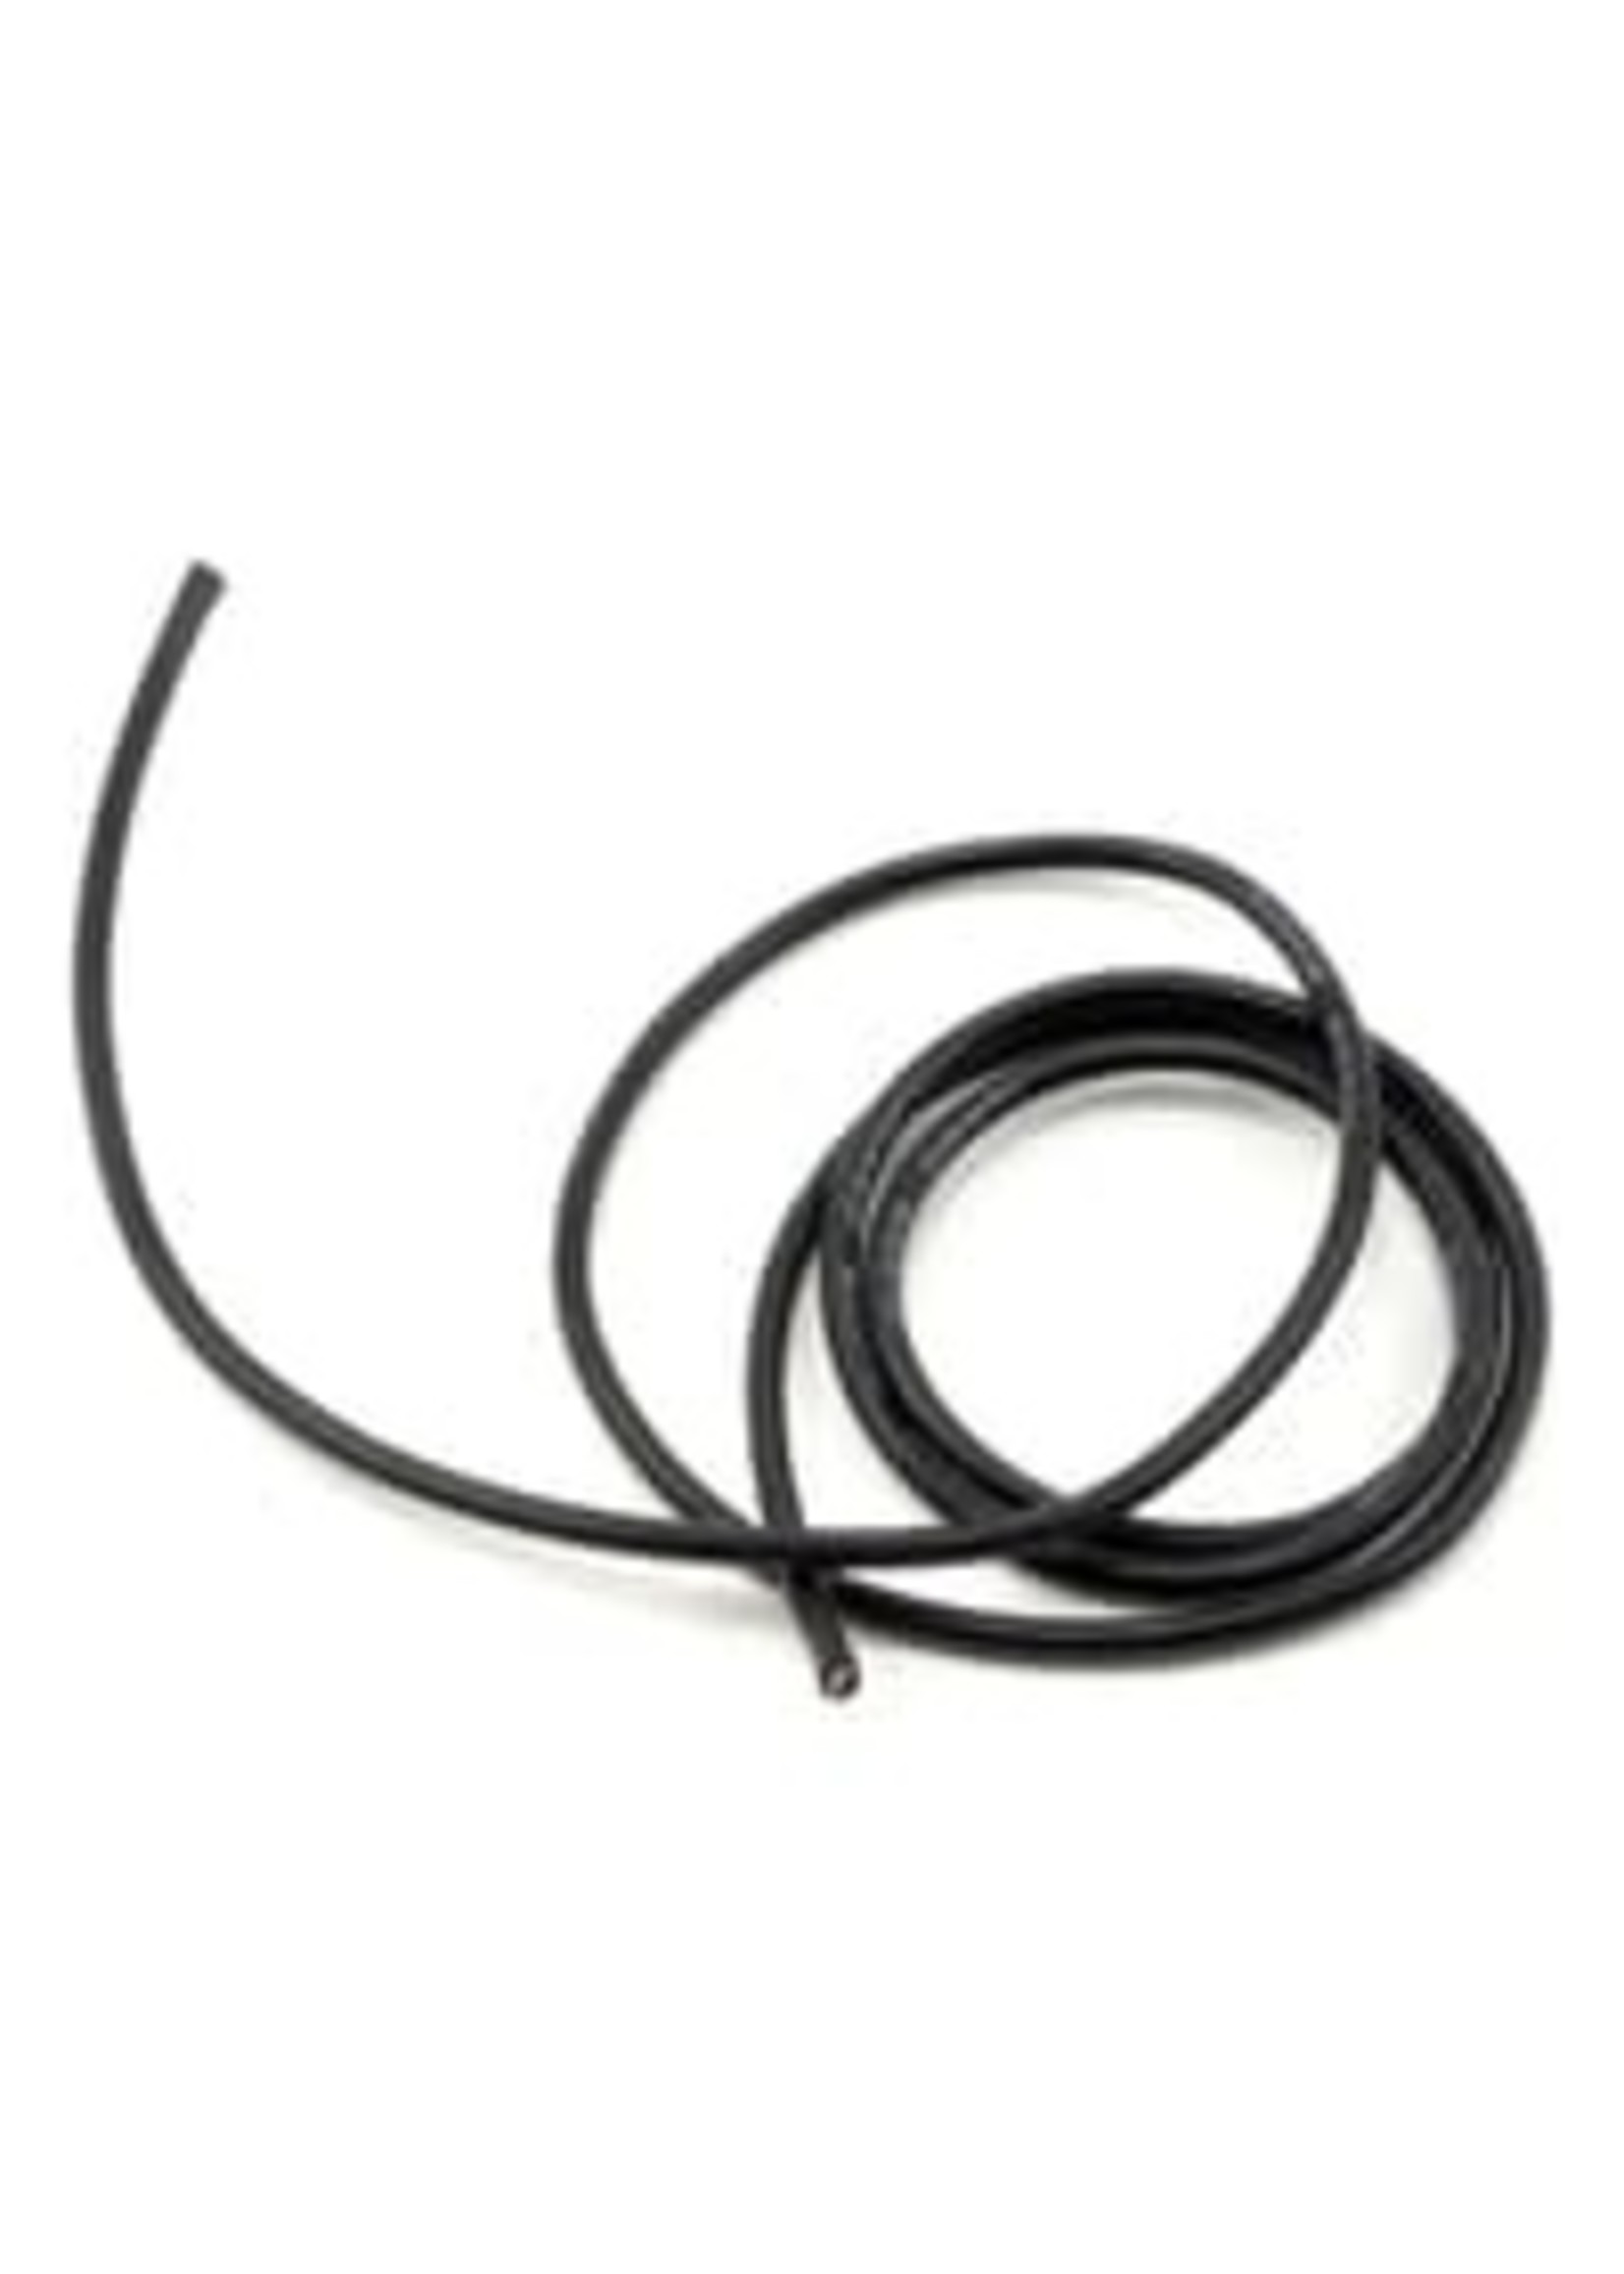 ProTek RC PTK-5603 ProTek RC 14awg Black Silicone Hookup Wire (1 Meter)